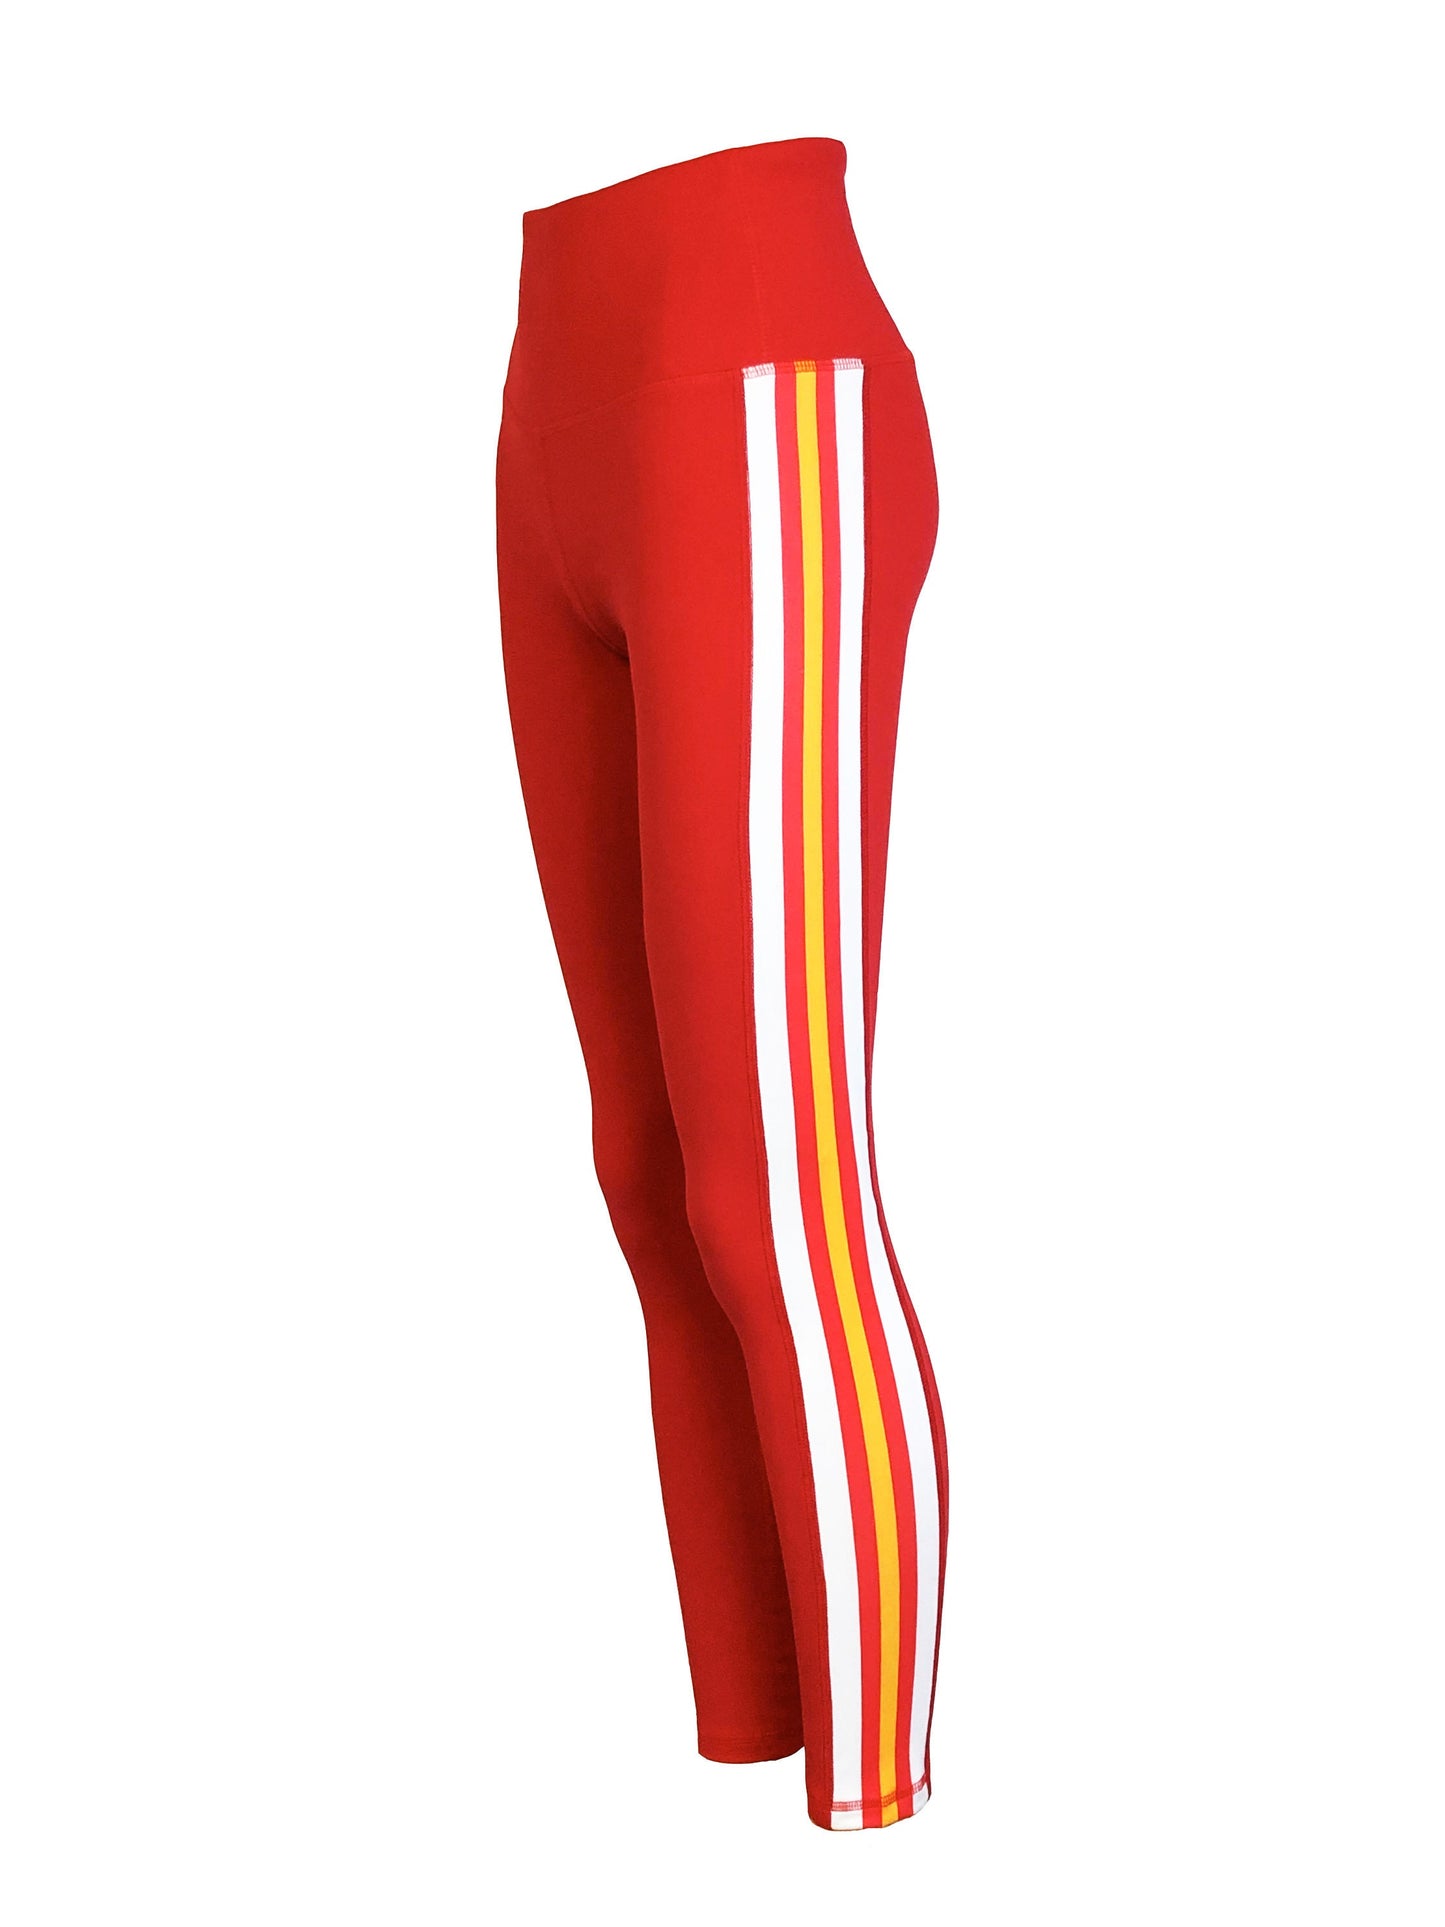 Arrow Dynamic Women's Full Length Yoga Pant Leggings (Red)